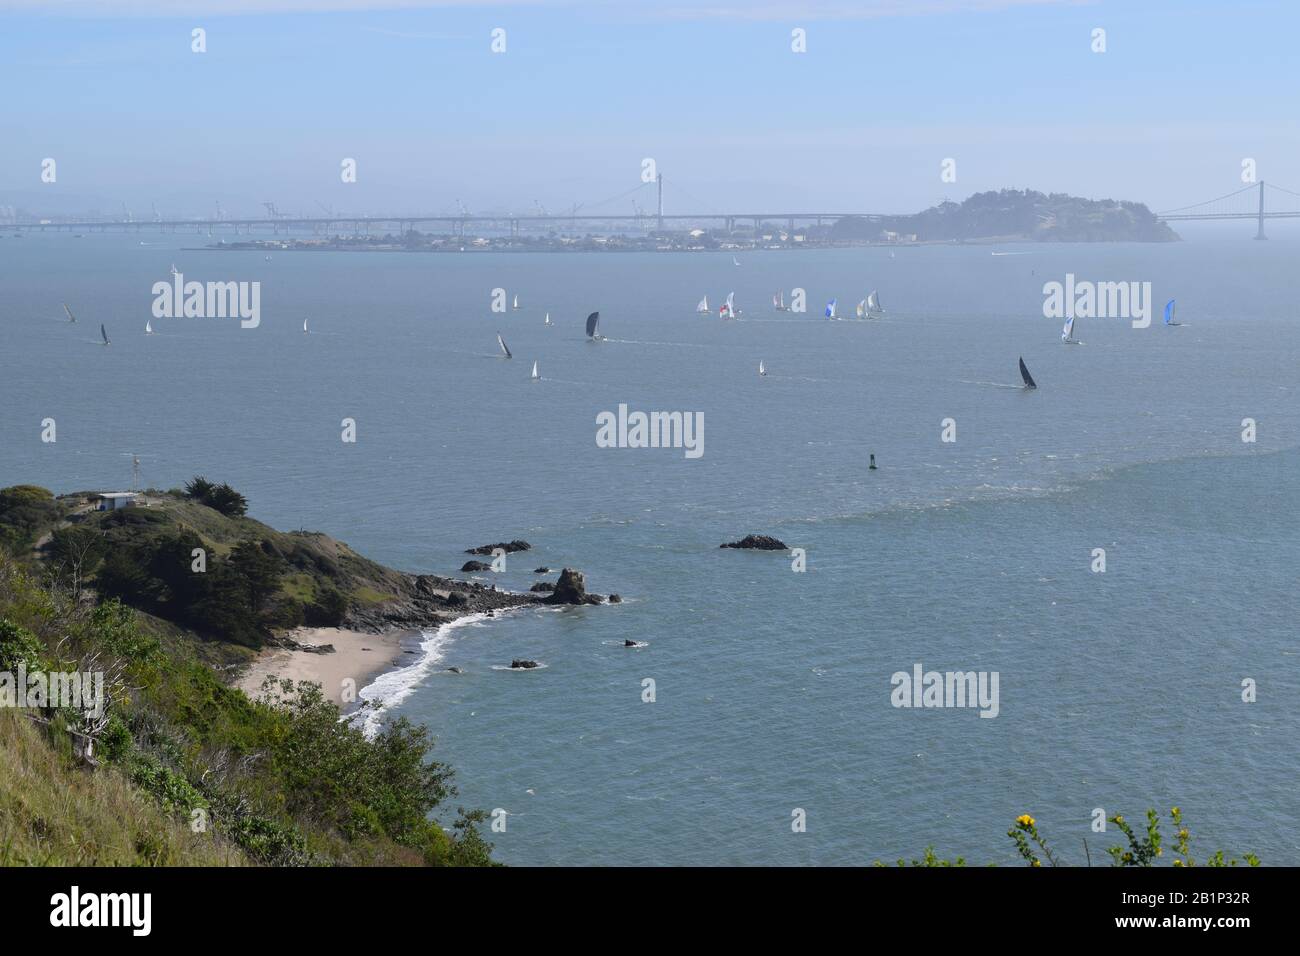 Piccola imbarcazione e grandi navi all'ingresso della Baia di San Francisco. La città di San Francisco è sullo sfondo. Foto Stock